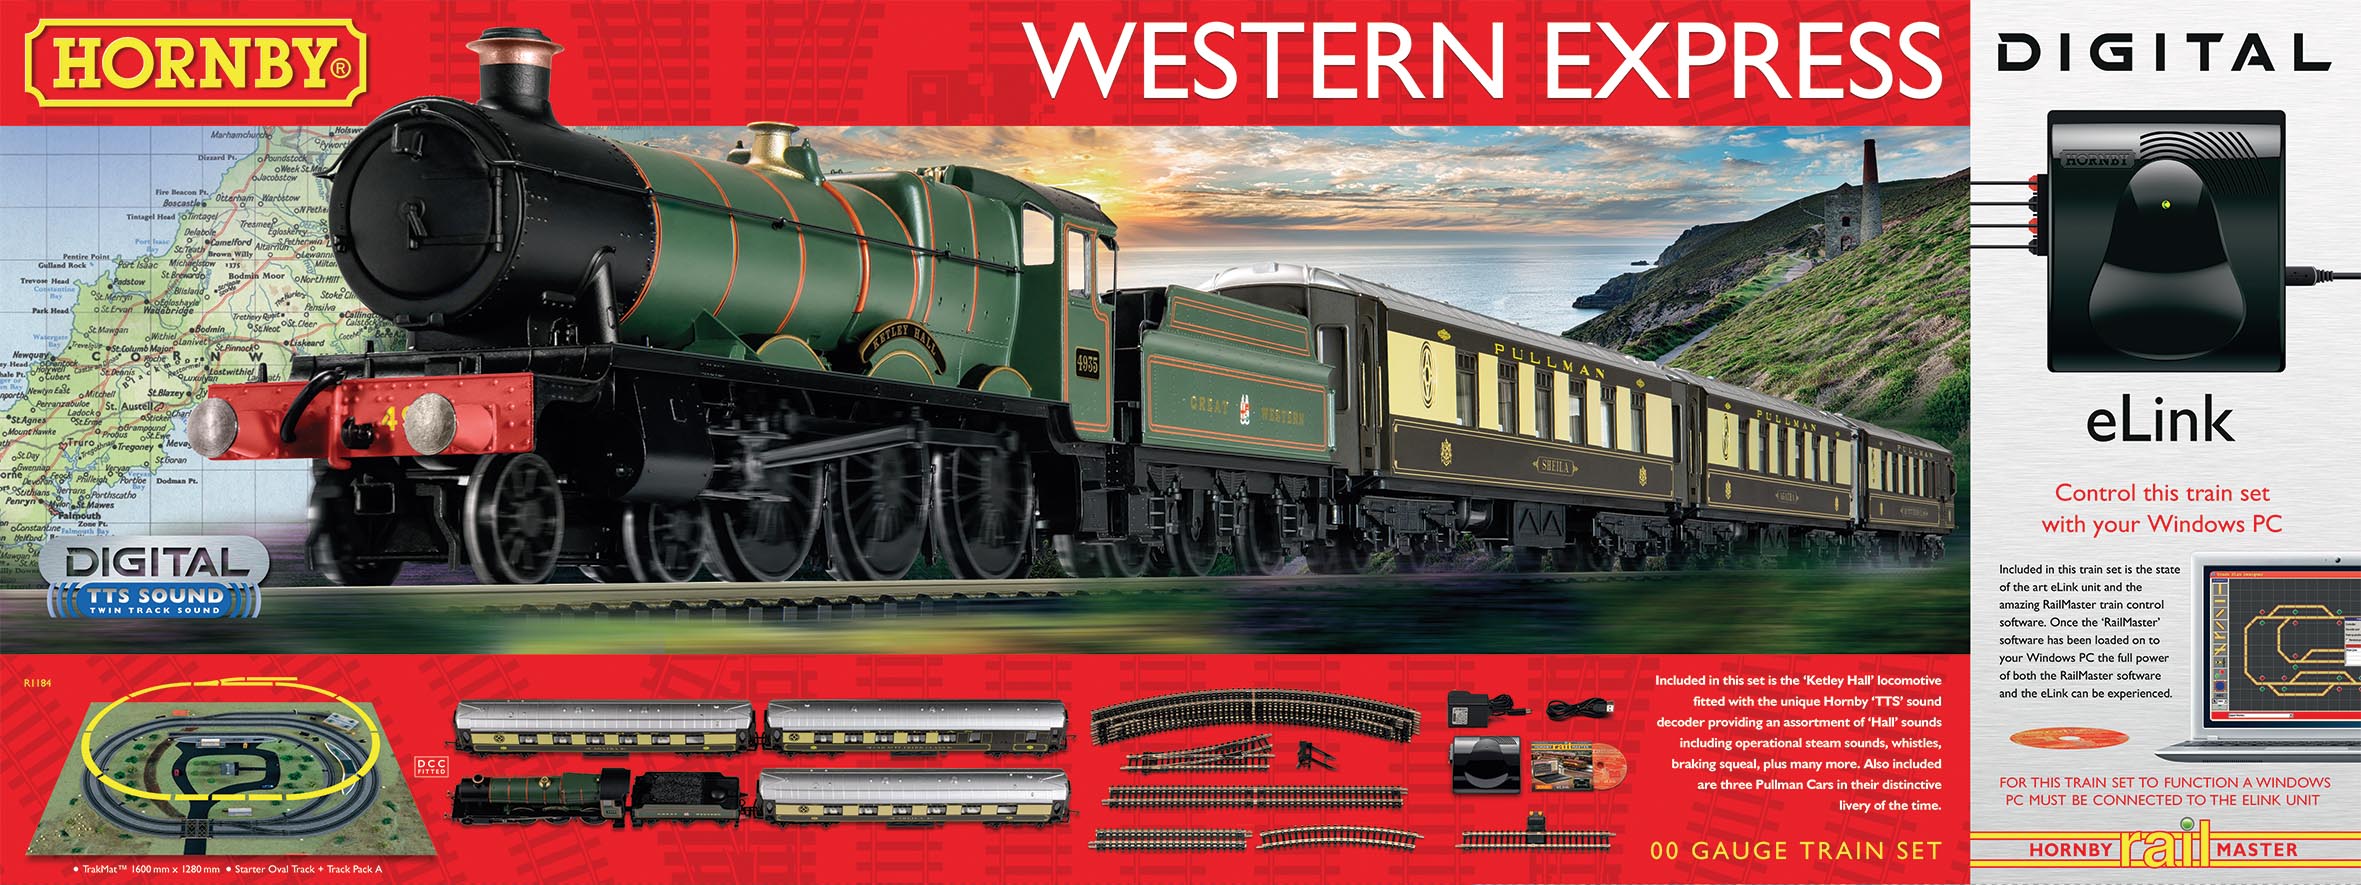 R1184 Hornby Western Express Digital 